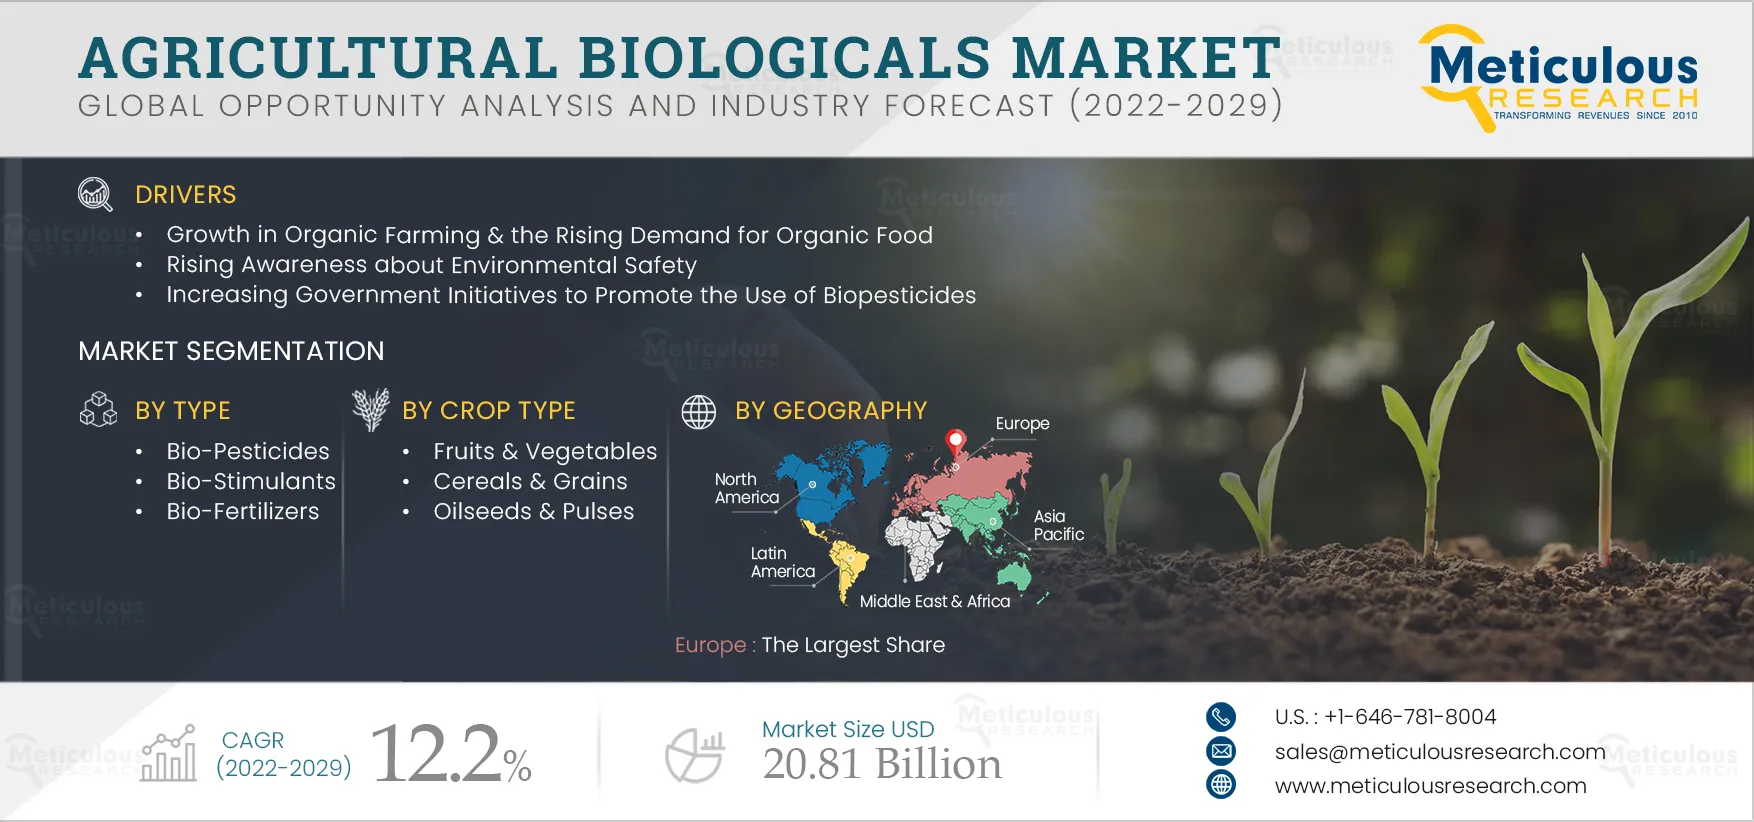 Agricultural Biologicals Market